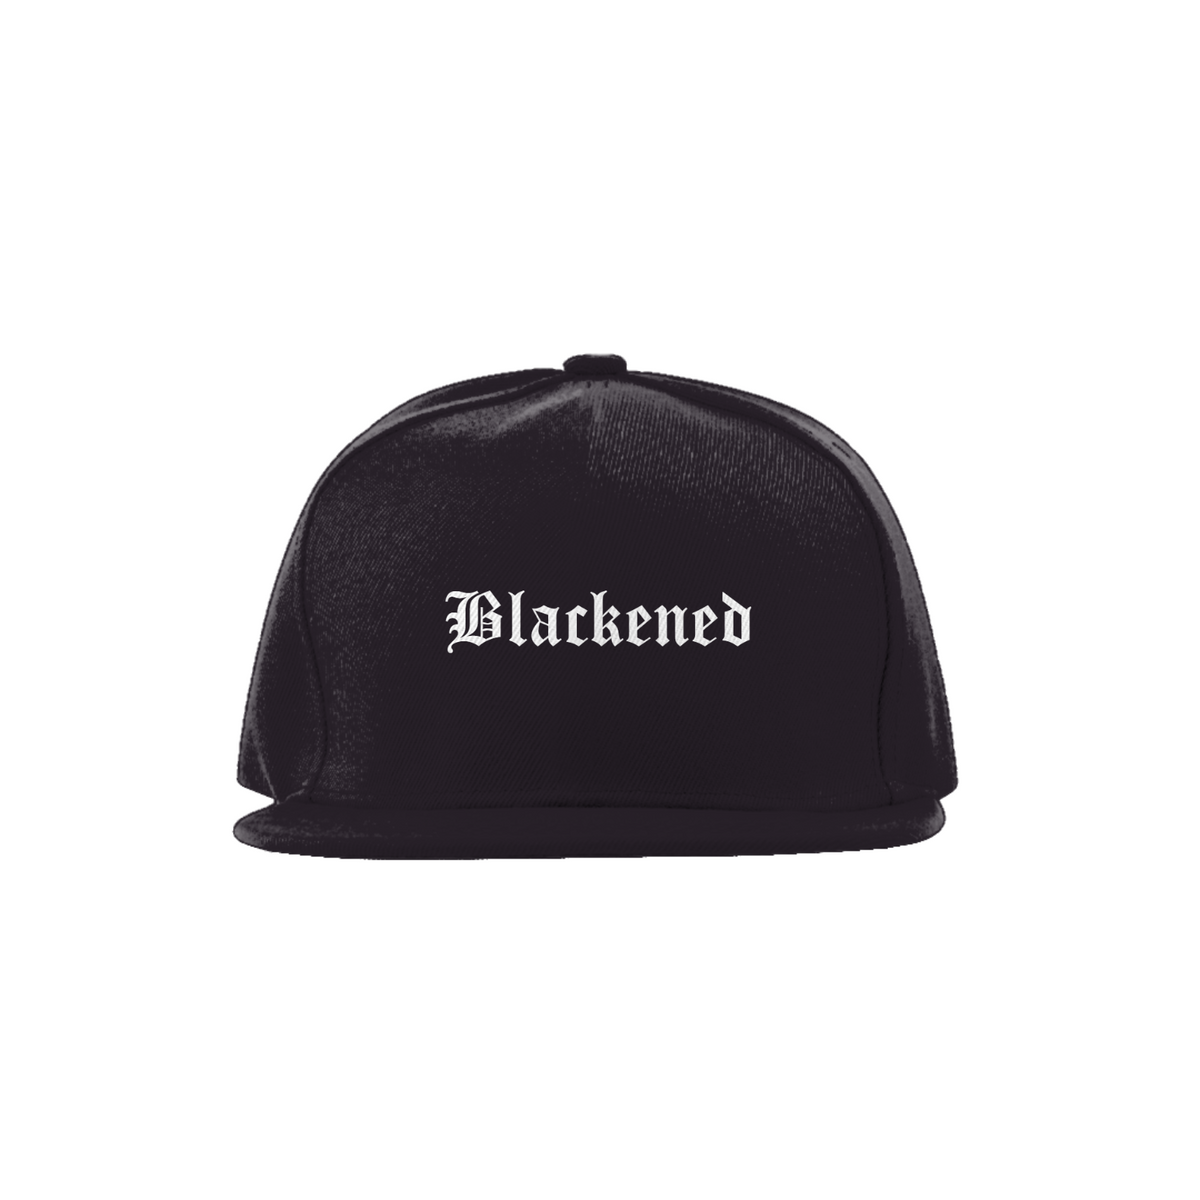 Nome do produto:  Blackened